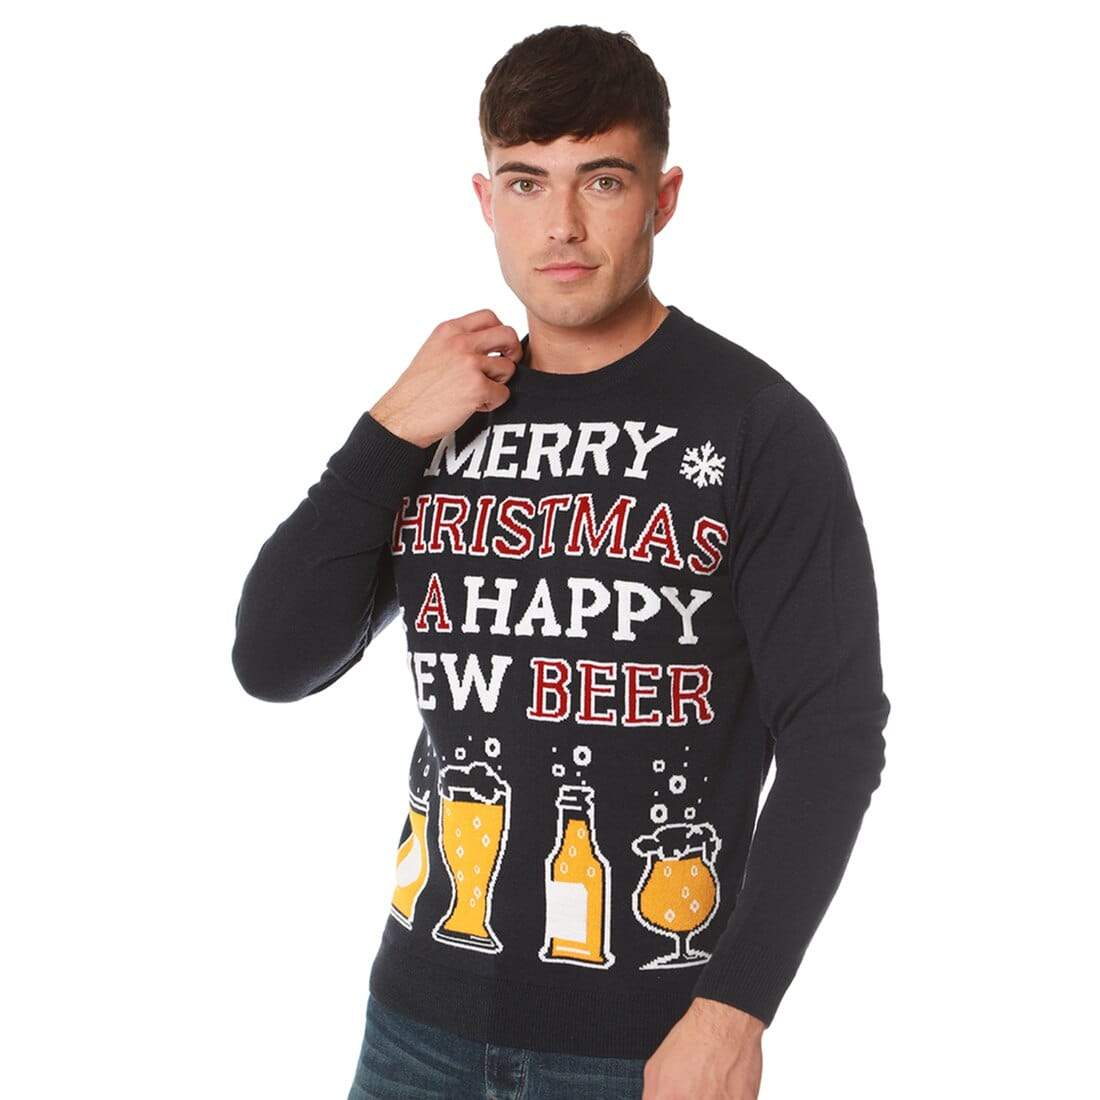 Mr Crimbo Mens Happy New Beer Slogan Knit Christmas Jumper - MrCrimbo.co.uk -SRG1A13460_F - Ink Blue -beer jumper